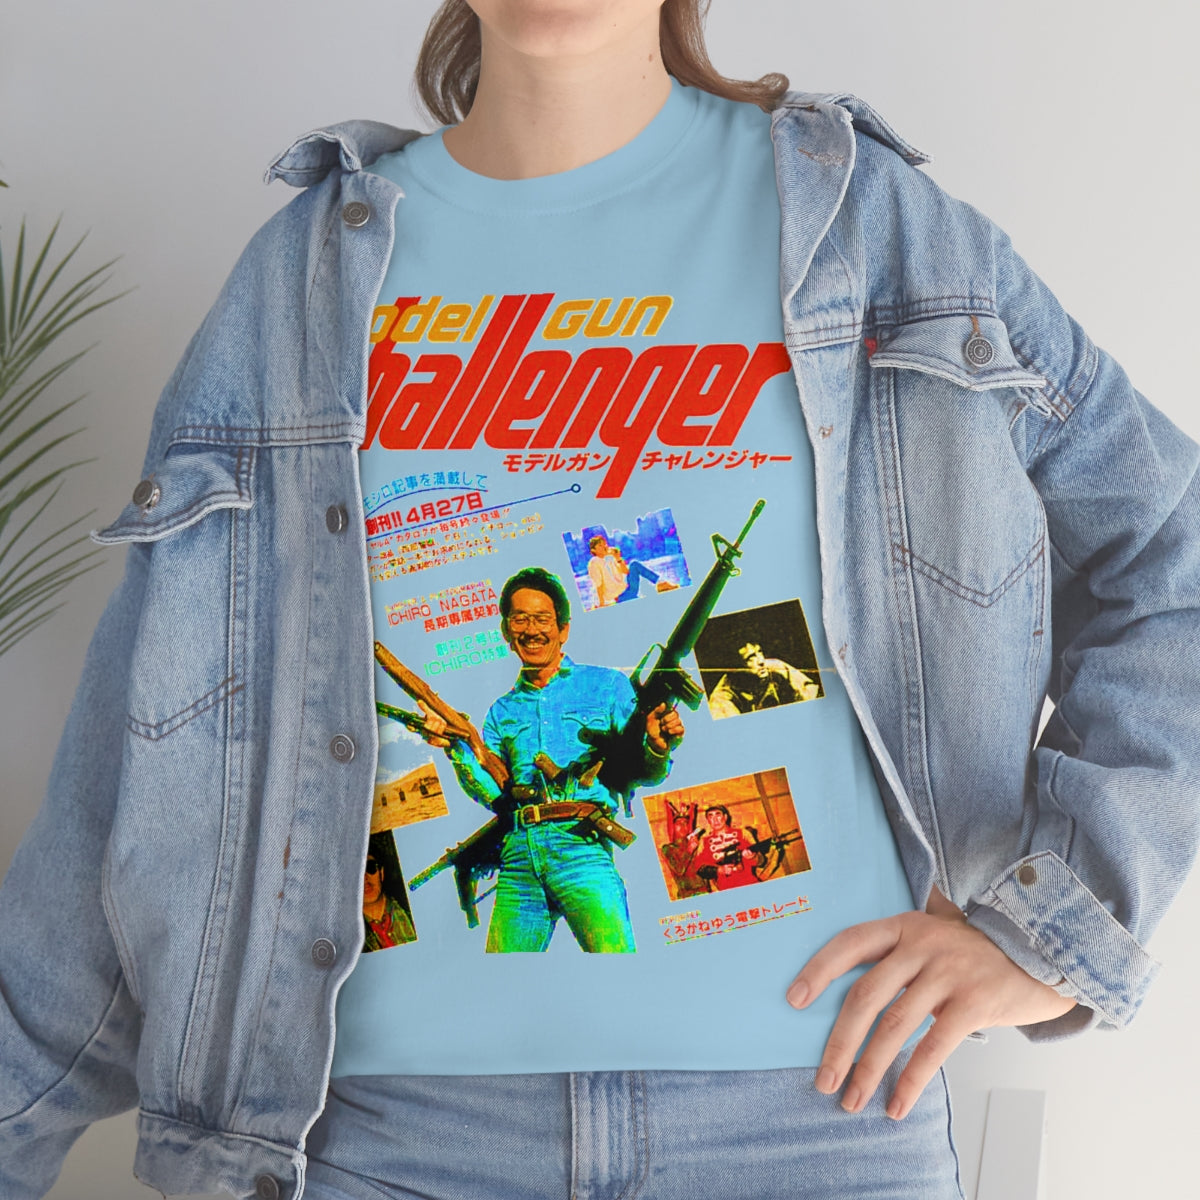 model gun challenger shirt gives you better life – best cotton shirt